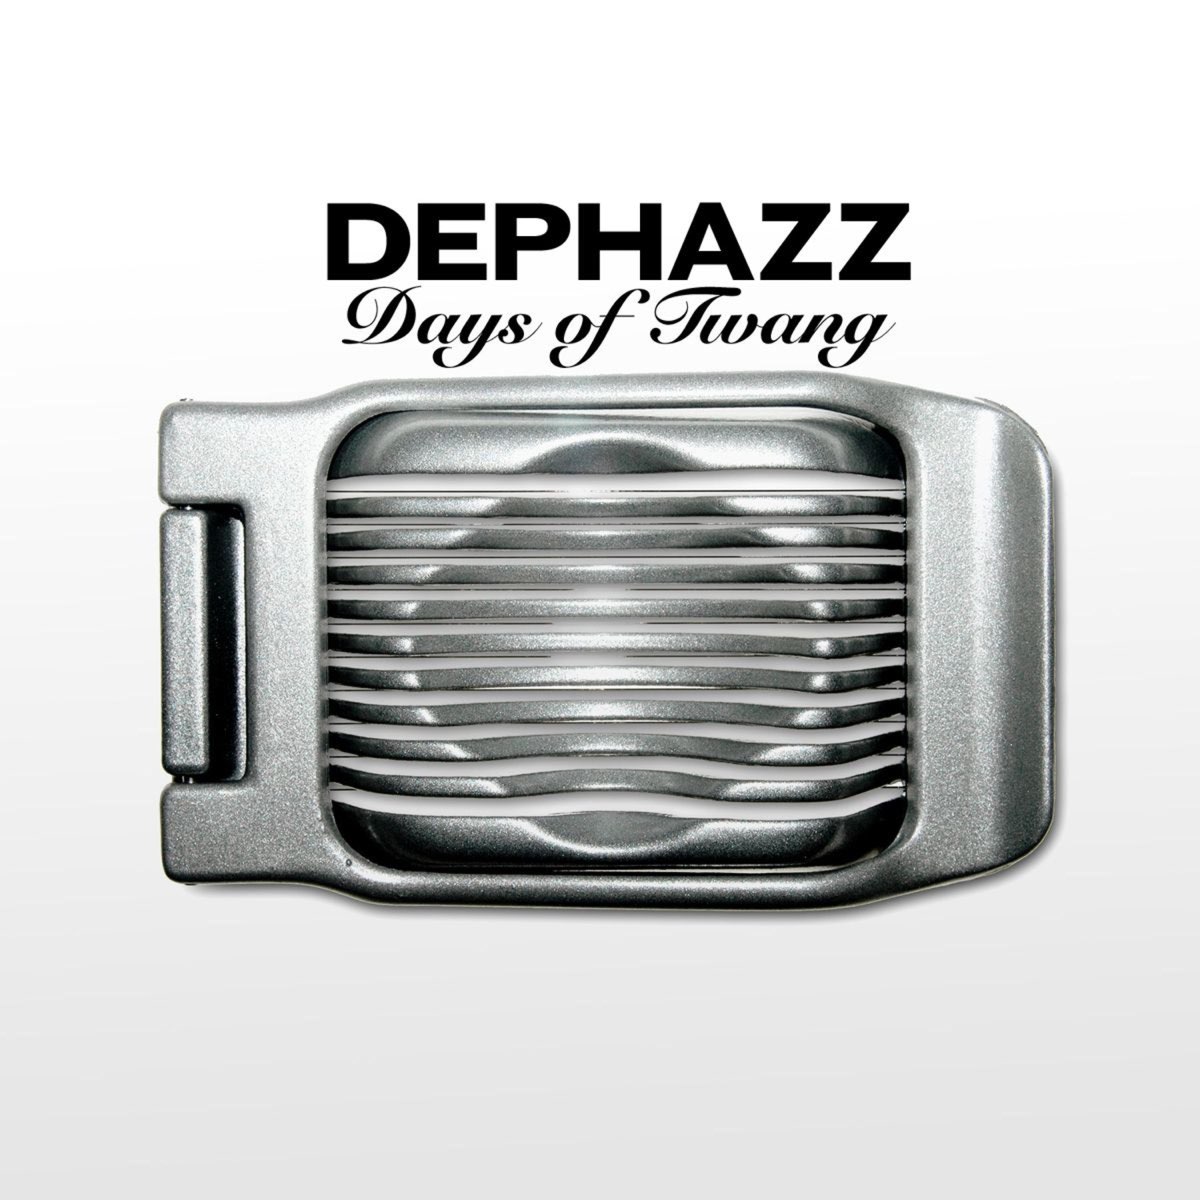 Days of Twang - альбом группы De-Phazz, выпущенный 23 марта 2007 года.